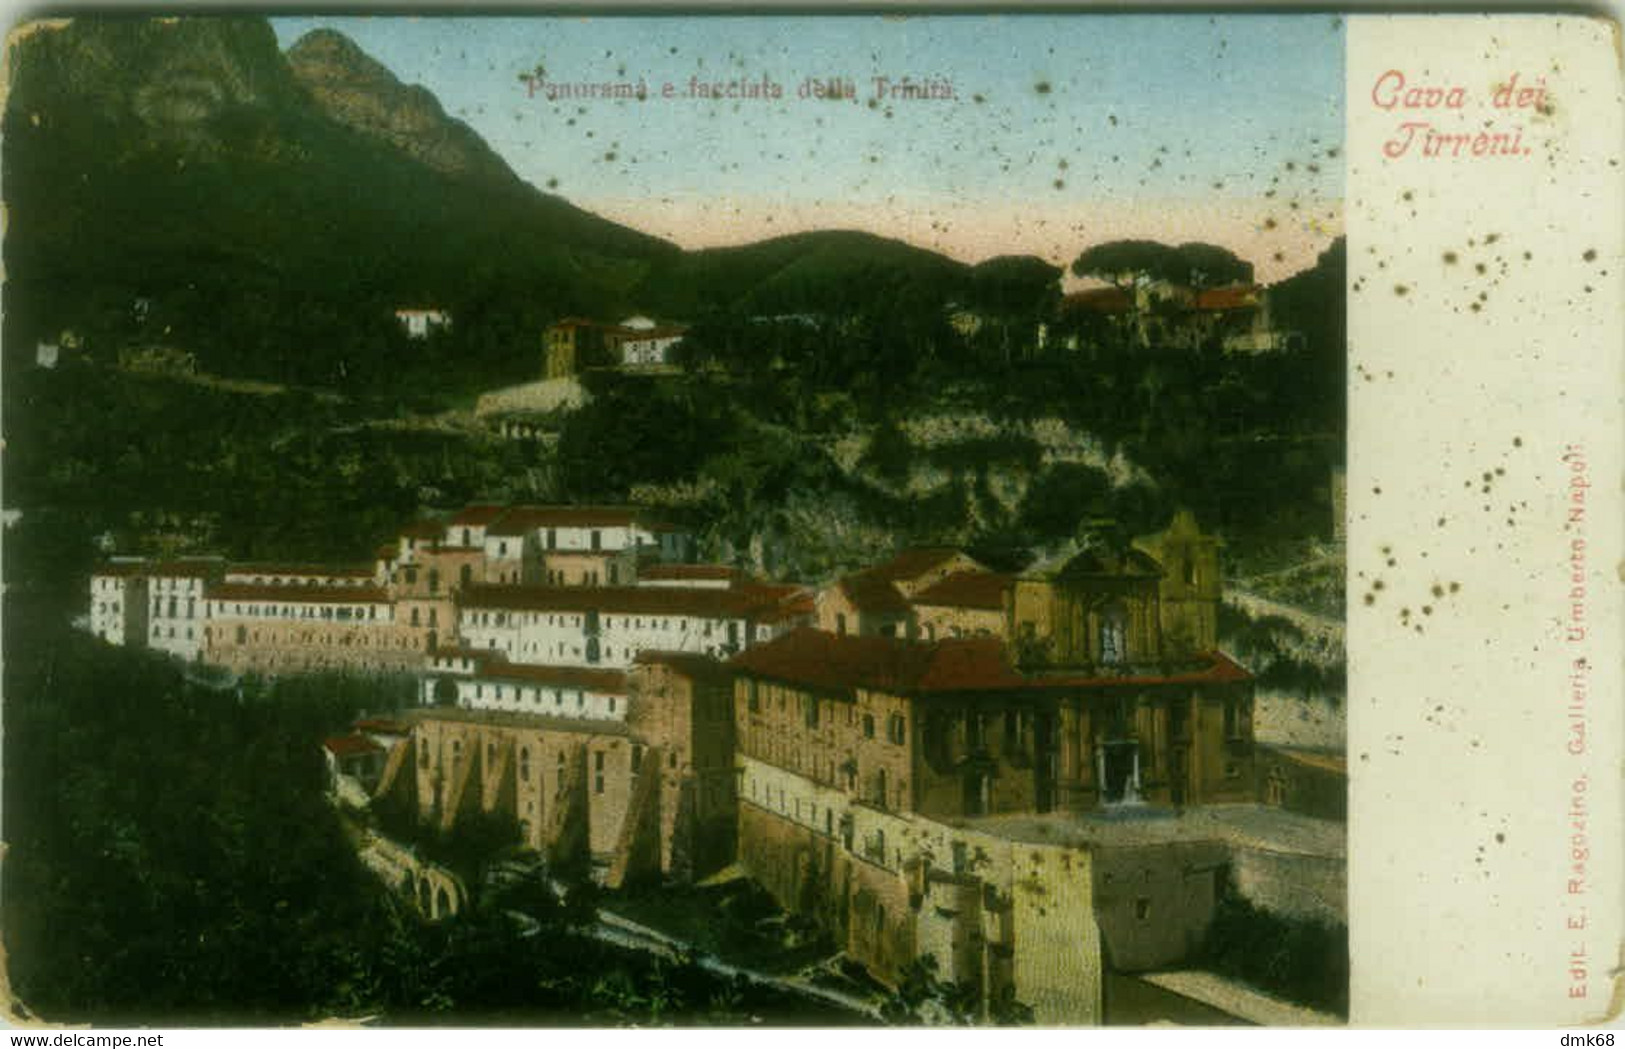 CAVA DE' TIRRENI ( SALERNO ) PANORAMA E FACCIATA DELLA TRINITA - EDIZIONE RAGOZINO - 1900s ( 7729) - Cava De' Tirreni